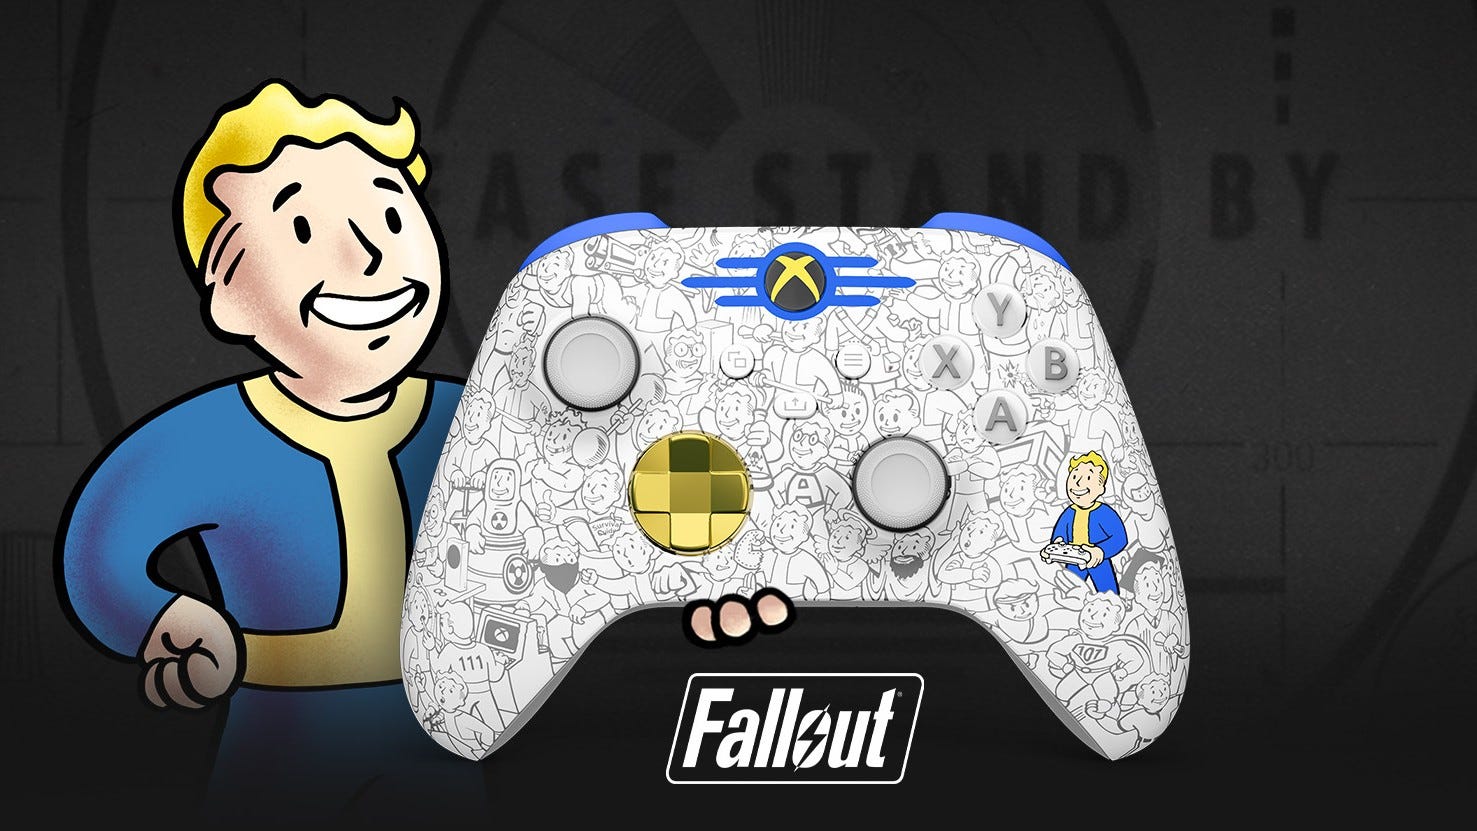 Fallout Xbox controller